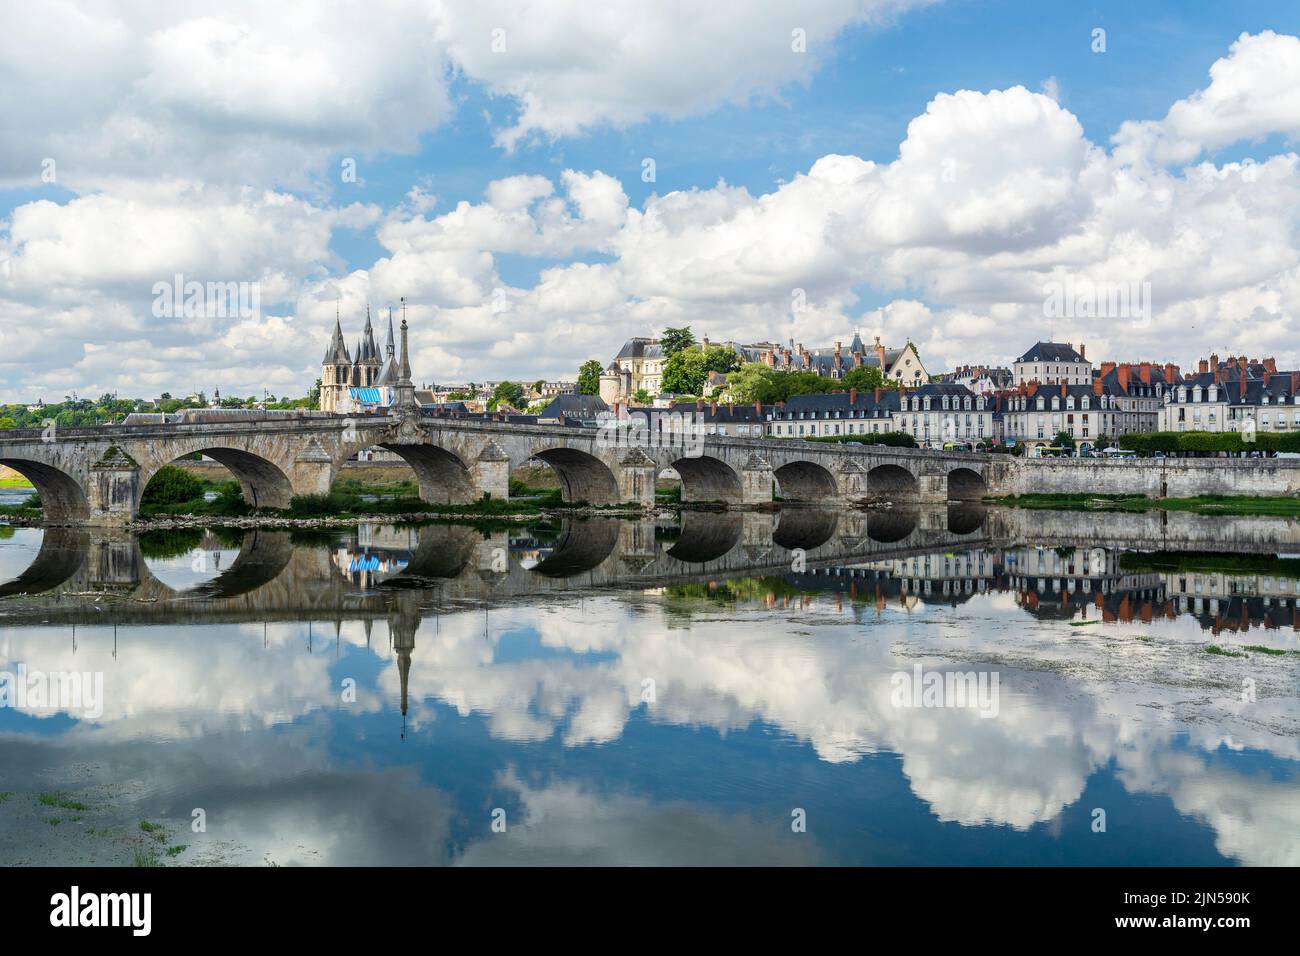 Blois, Loire Valley, France: Blois skyline, city on the shores of Loire River with Jacques Gabriel bridge, capital of Loir-et-Cher department in centr Stock Photo